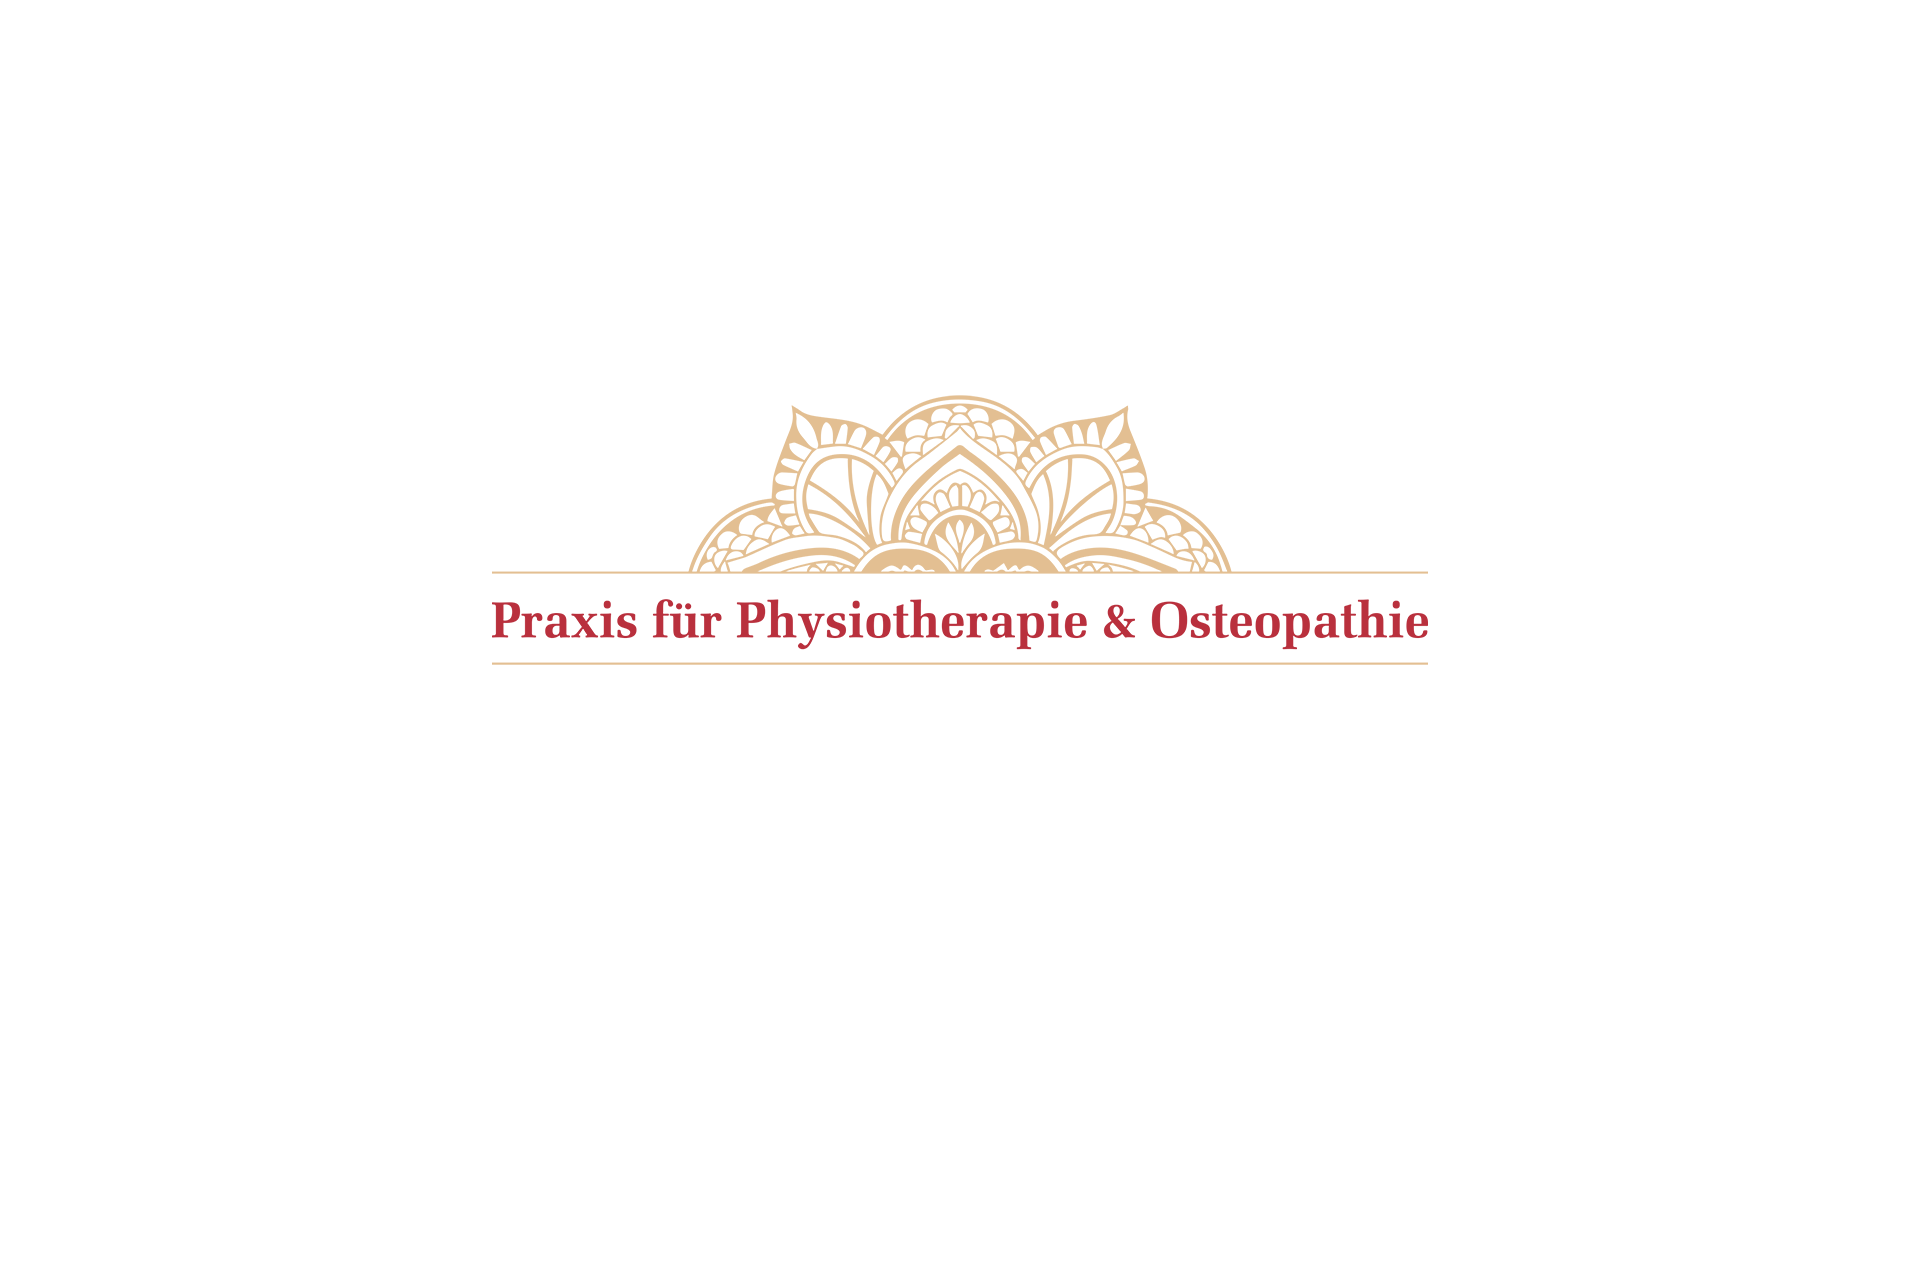 Logo der Firma Praxis für Physiotherapie und Osteopathie - Heilpraktikerin Silvia Kasperschinski aus Zossen